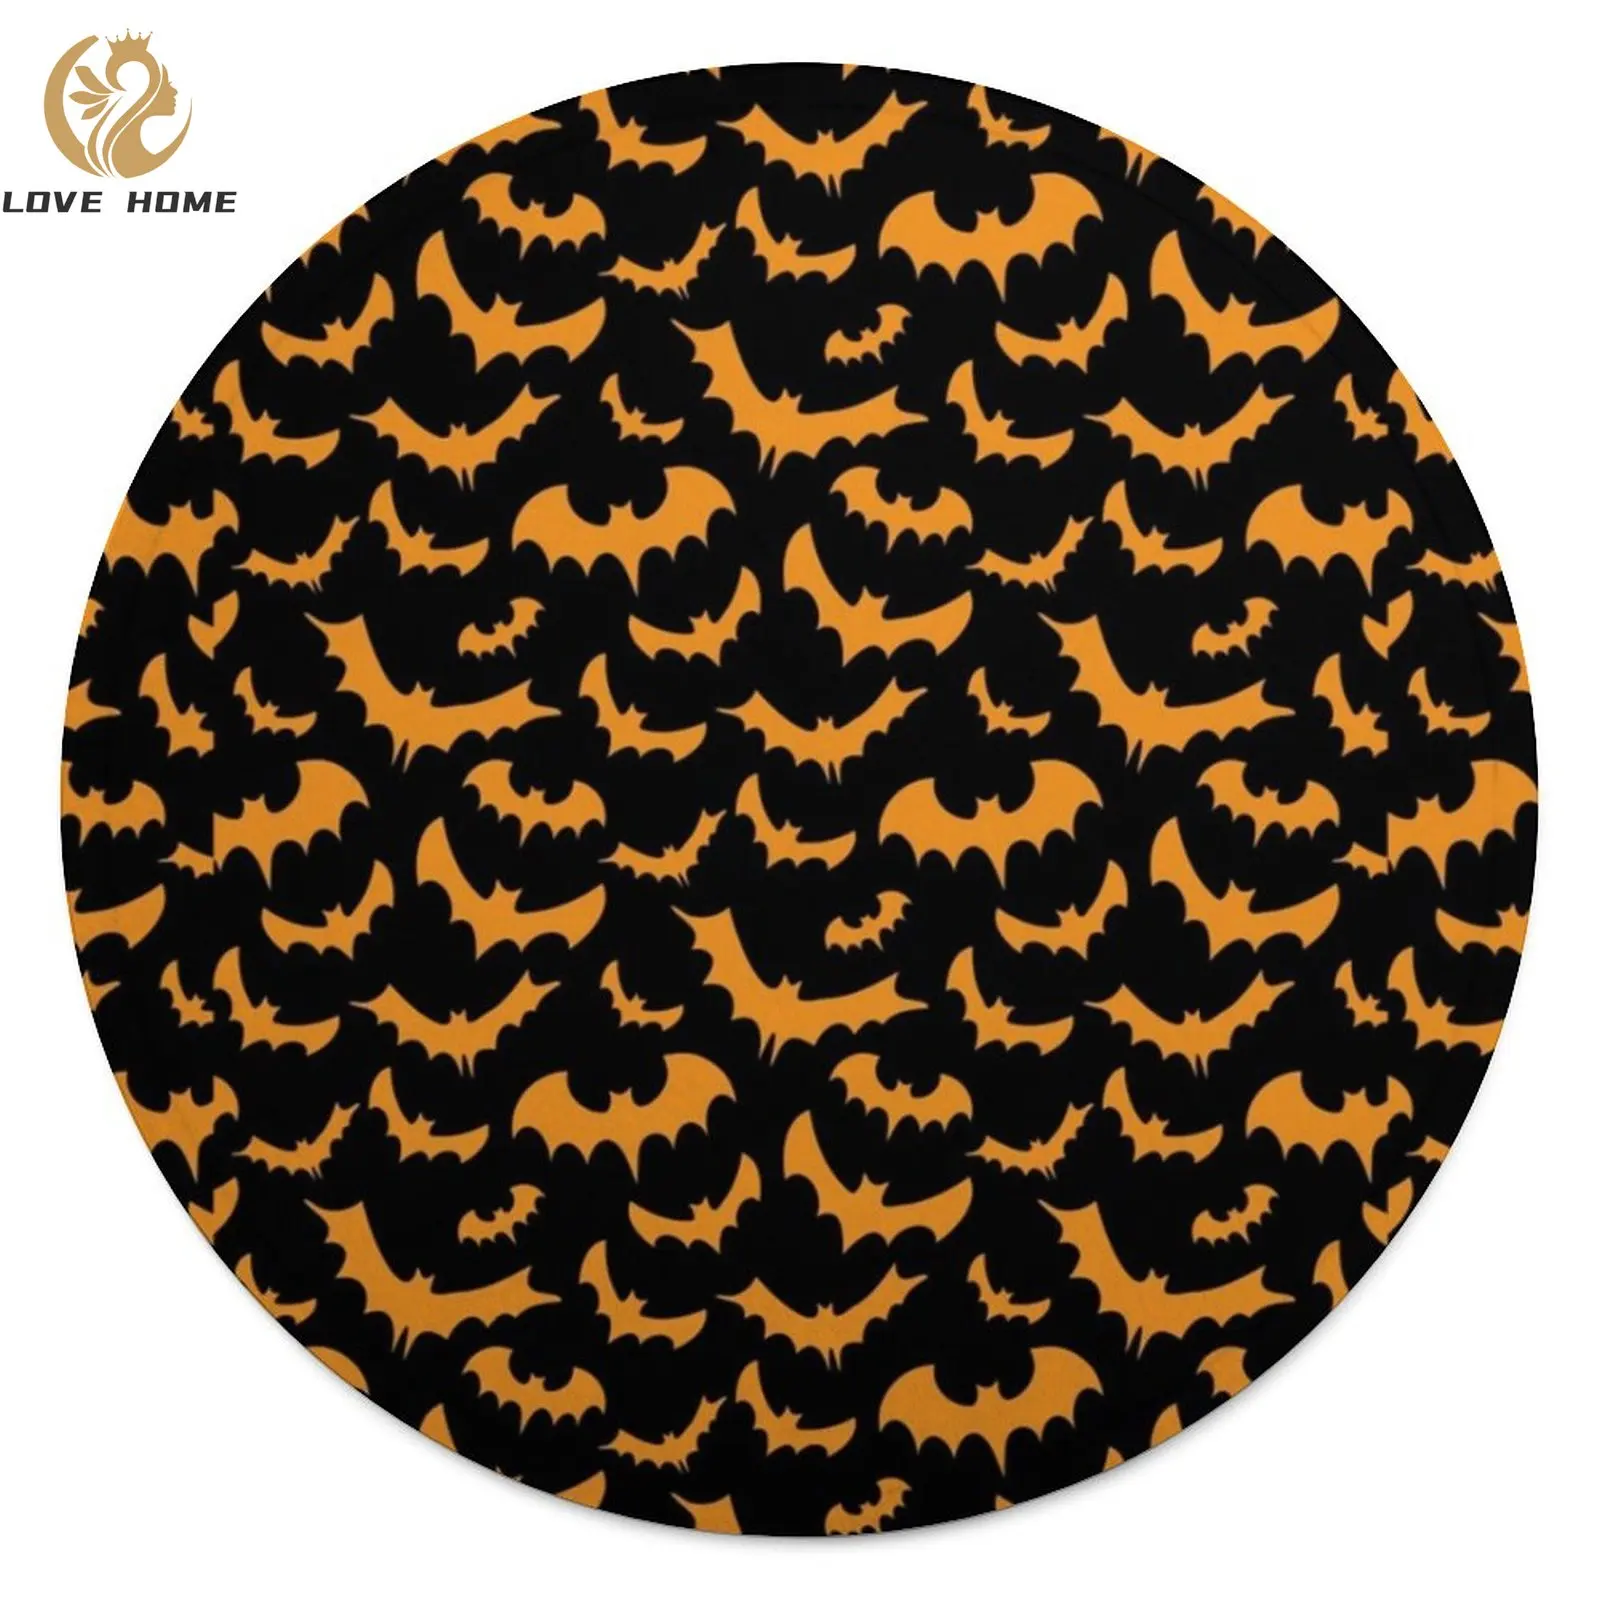 

Оранжевое одеяло с принтом летучих мышей, забавное супермягкое модное круглое покрывало на Хэллоуин, декоративное флисовое холодное одеяло